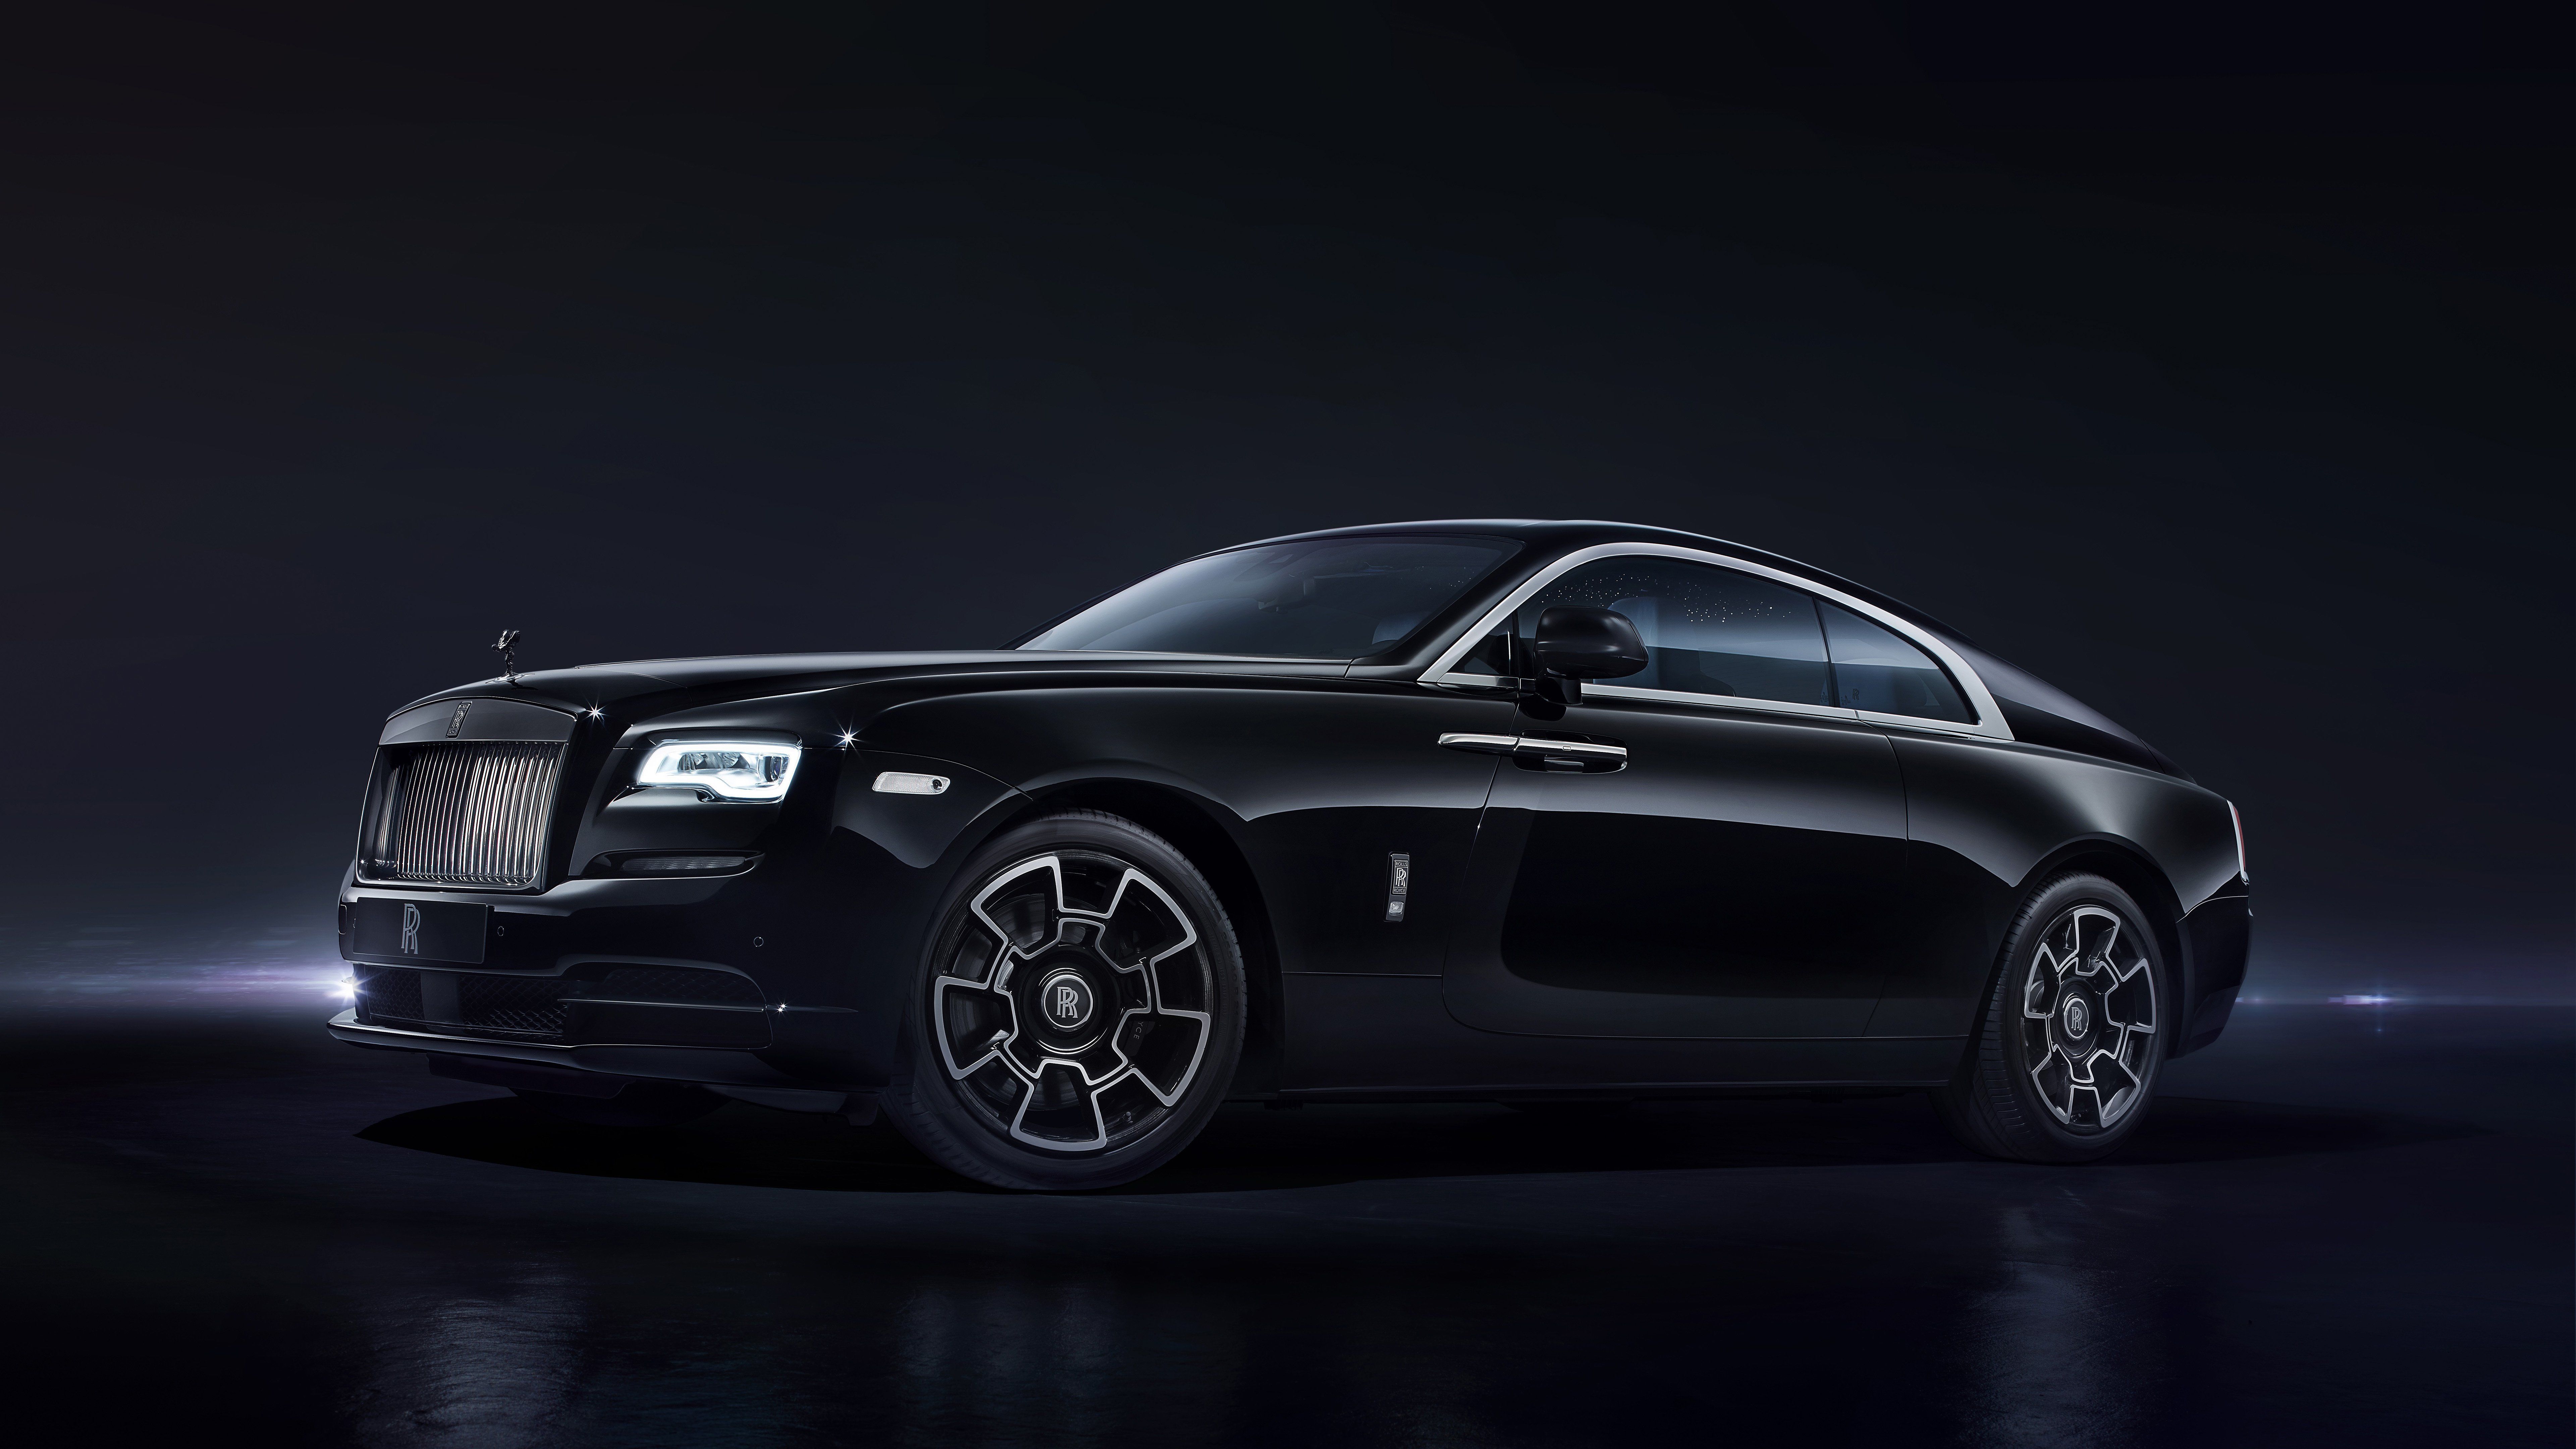 Rolls Royce Black 2017 8k HD 4k Wallpaper, Image